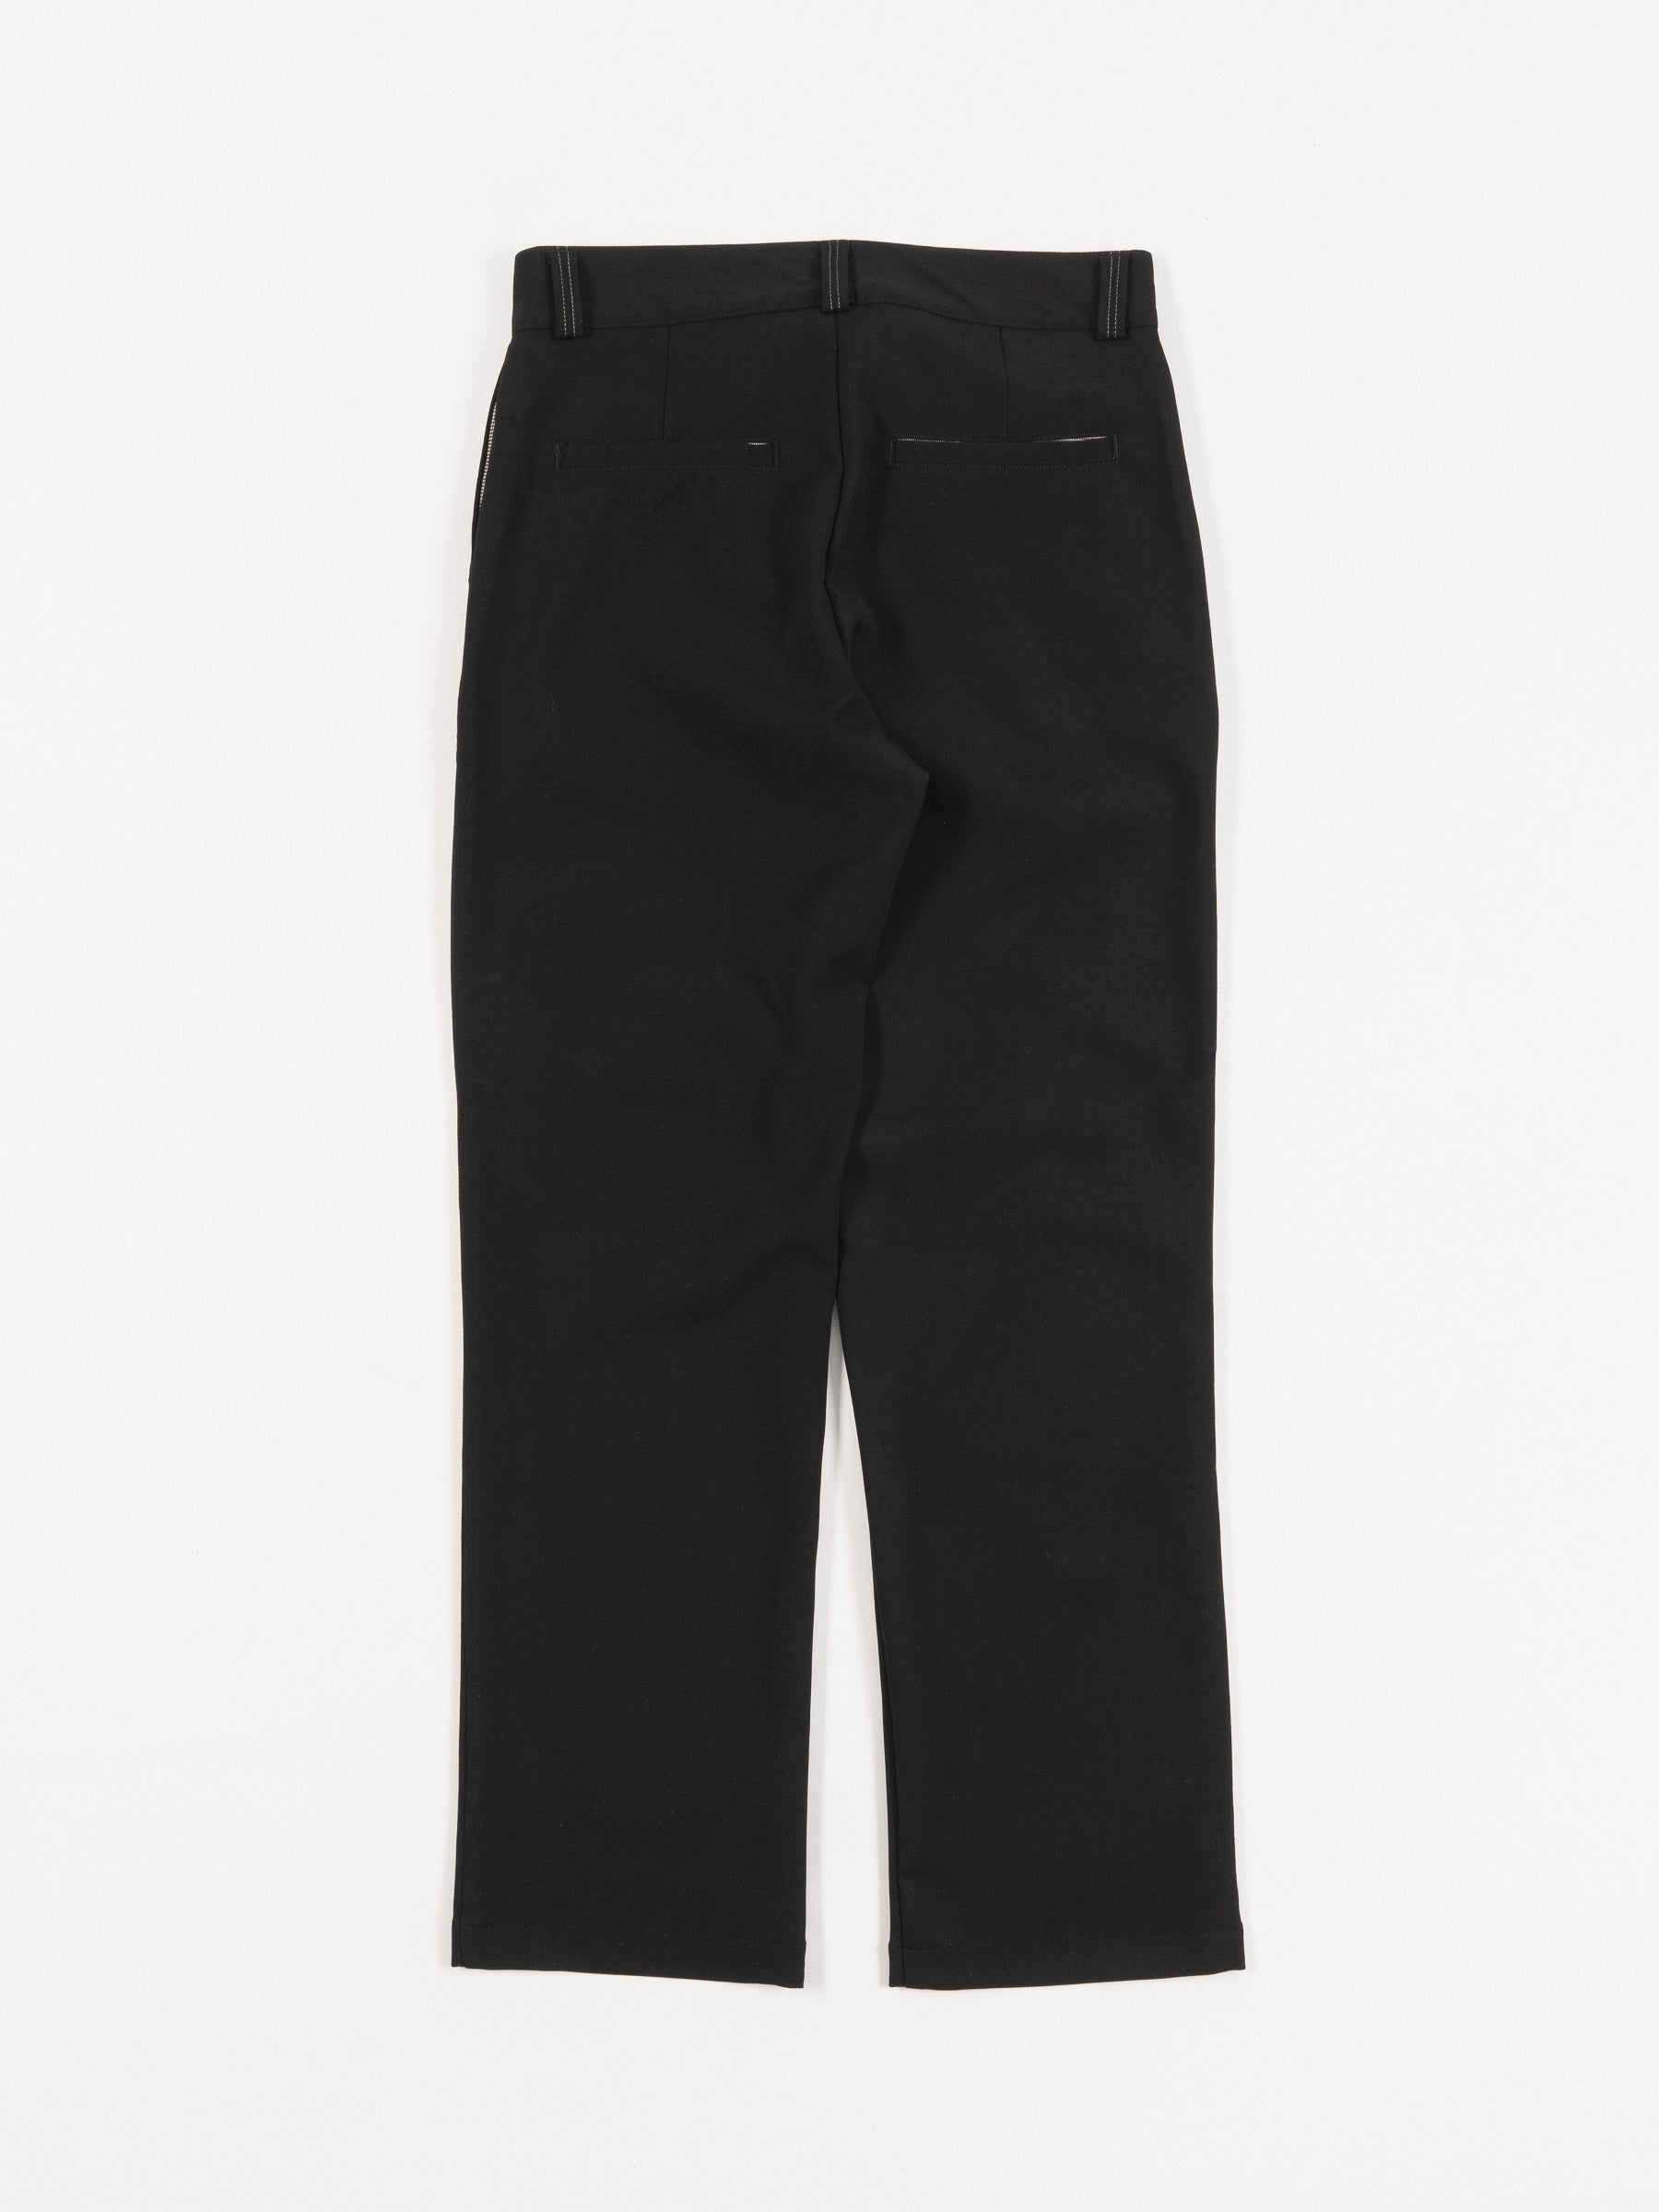 Emery Wool Pants Black Multi